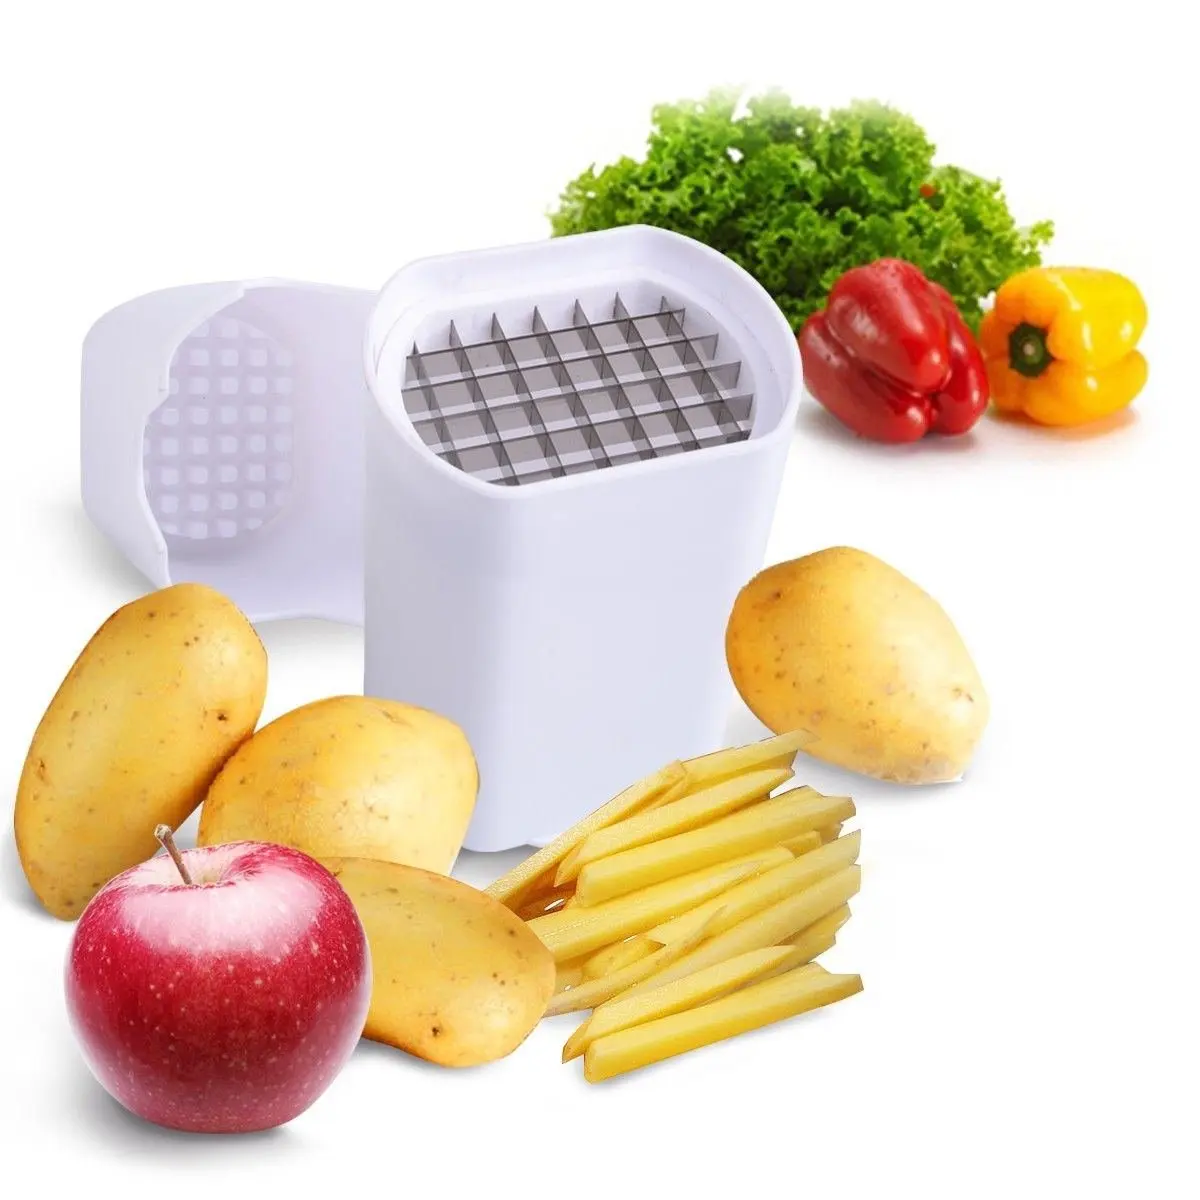 Картофелечистка картофеля нож для овощей-лучший для картофеля фри и яблочные ломтики-картофельные чипсы вафельница